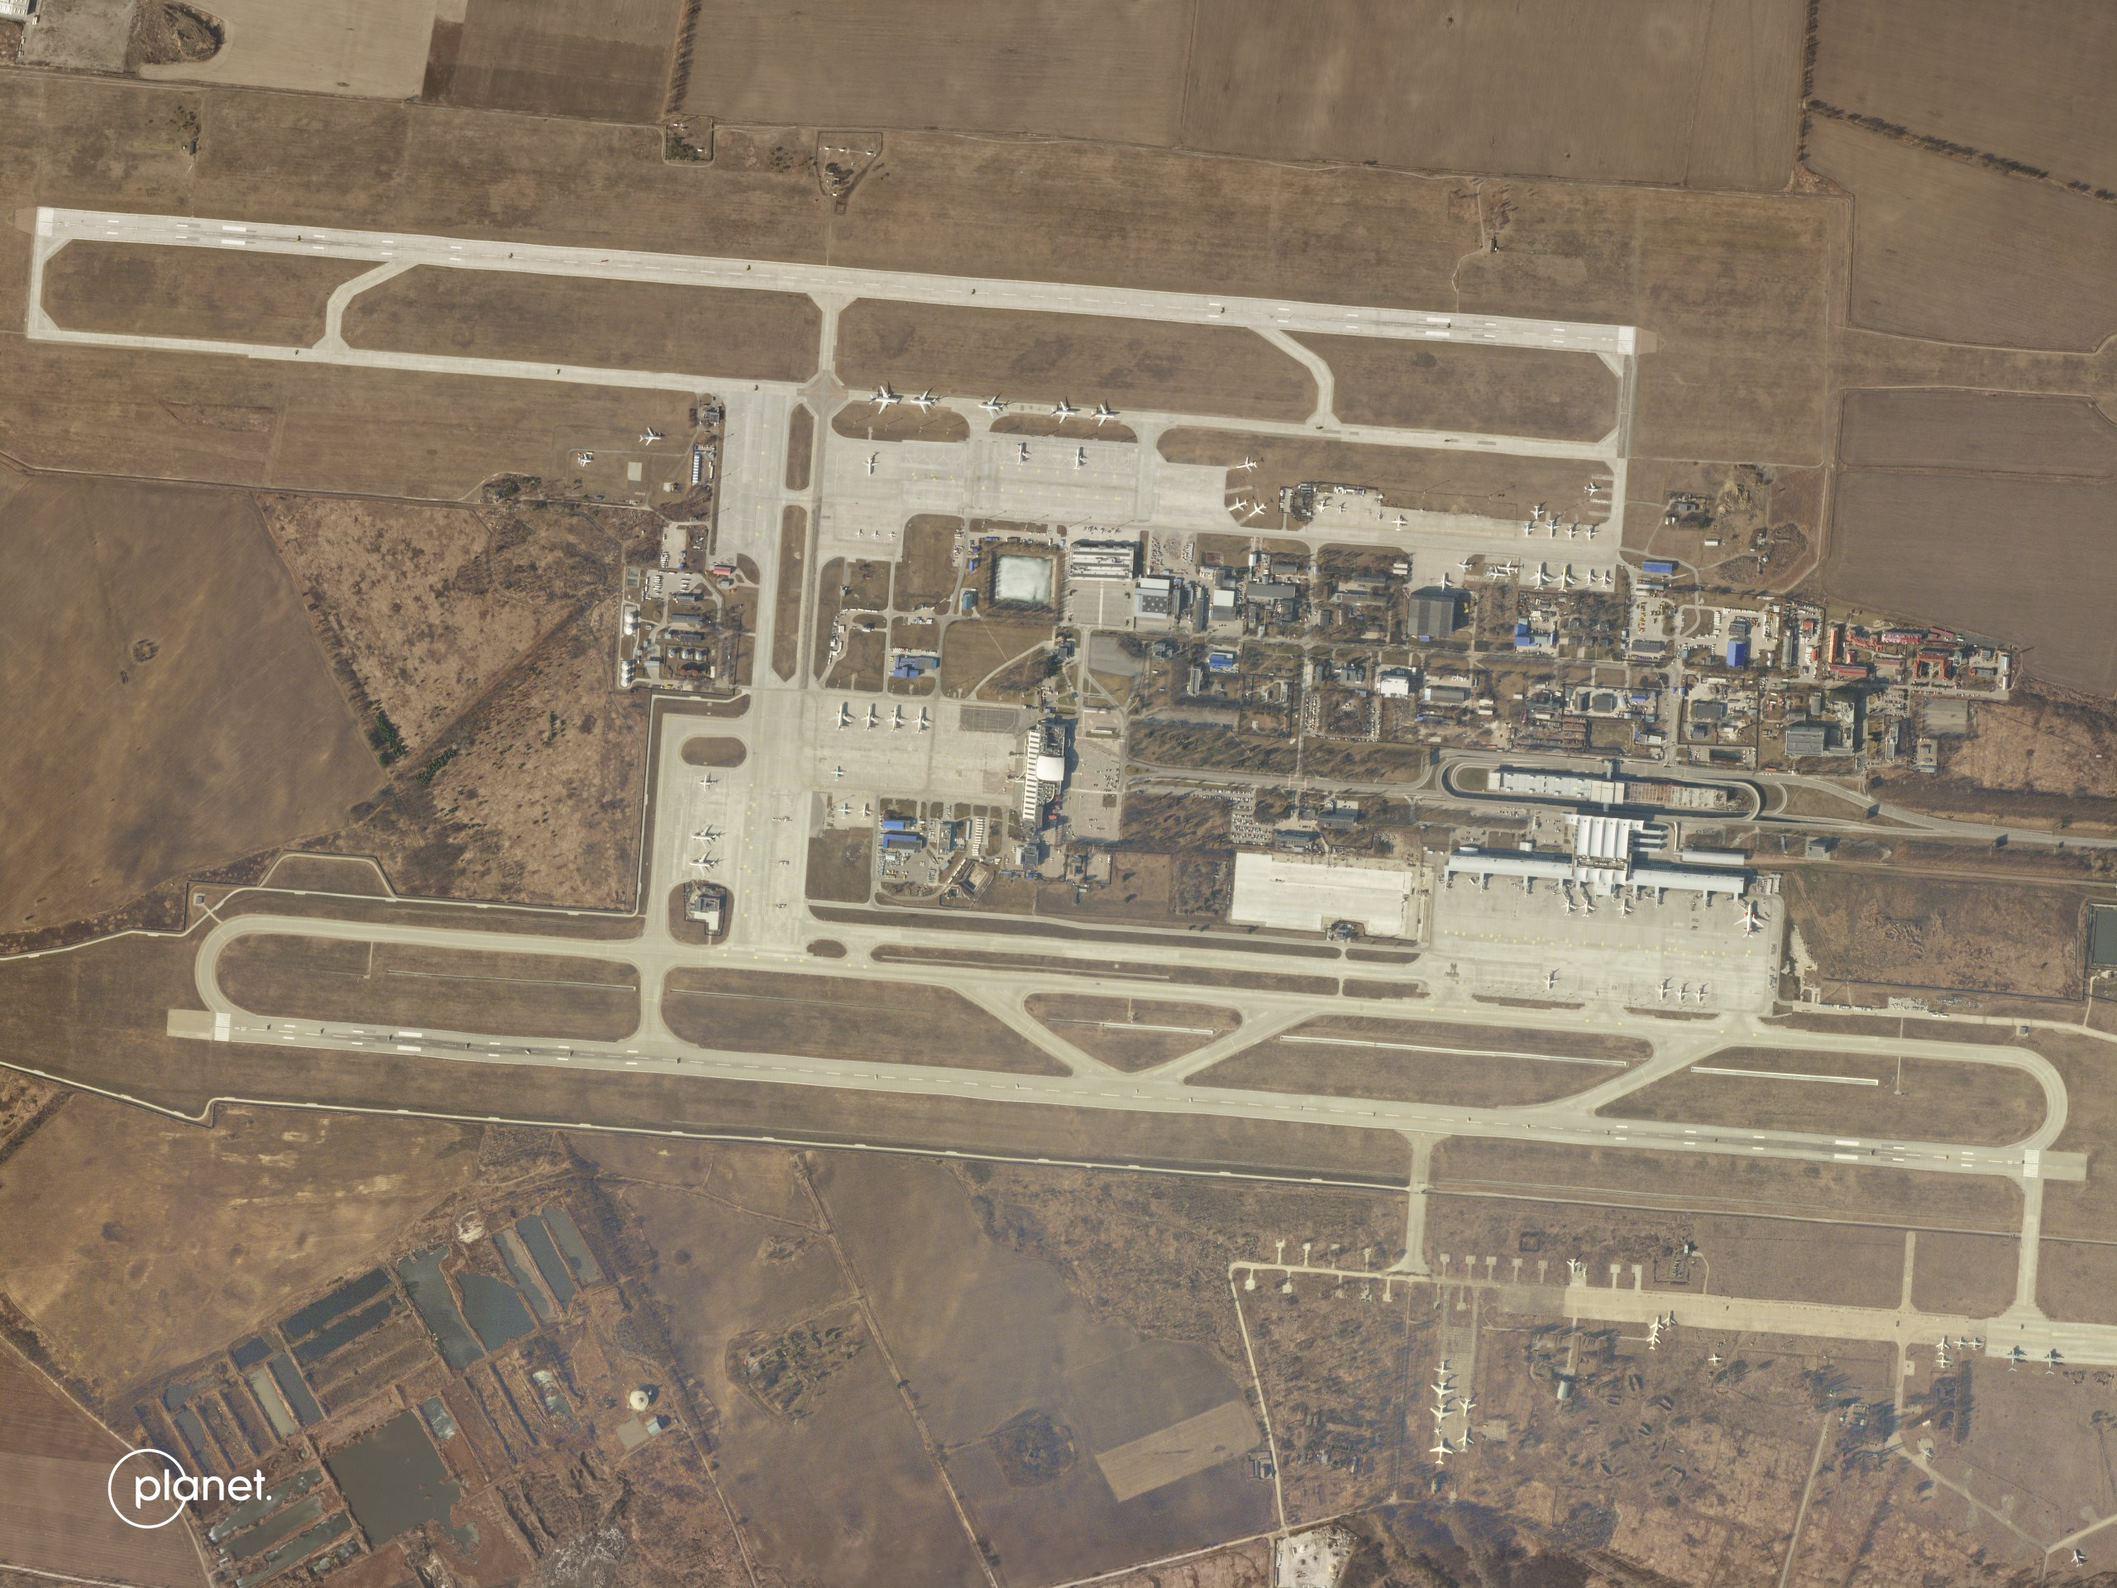 Imagini din satelit cu aeroportul Boryspil. Pistele sunt blocate de tancuri